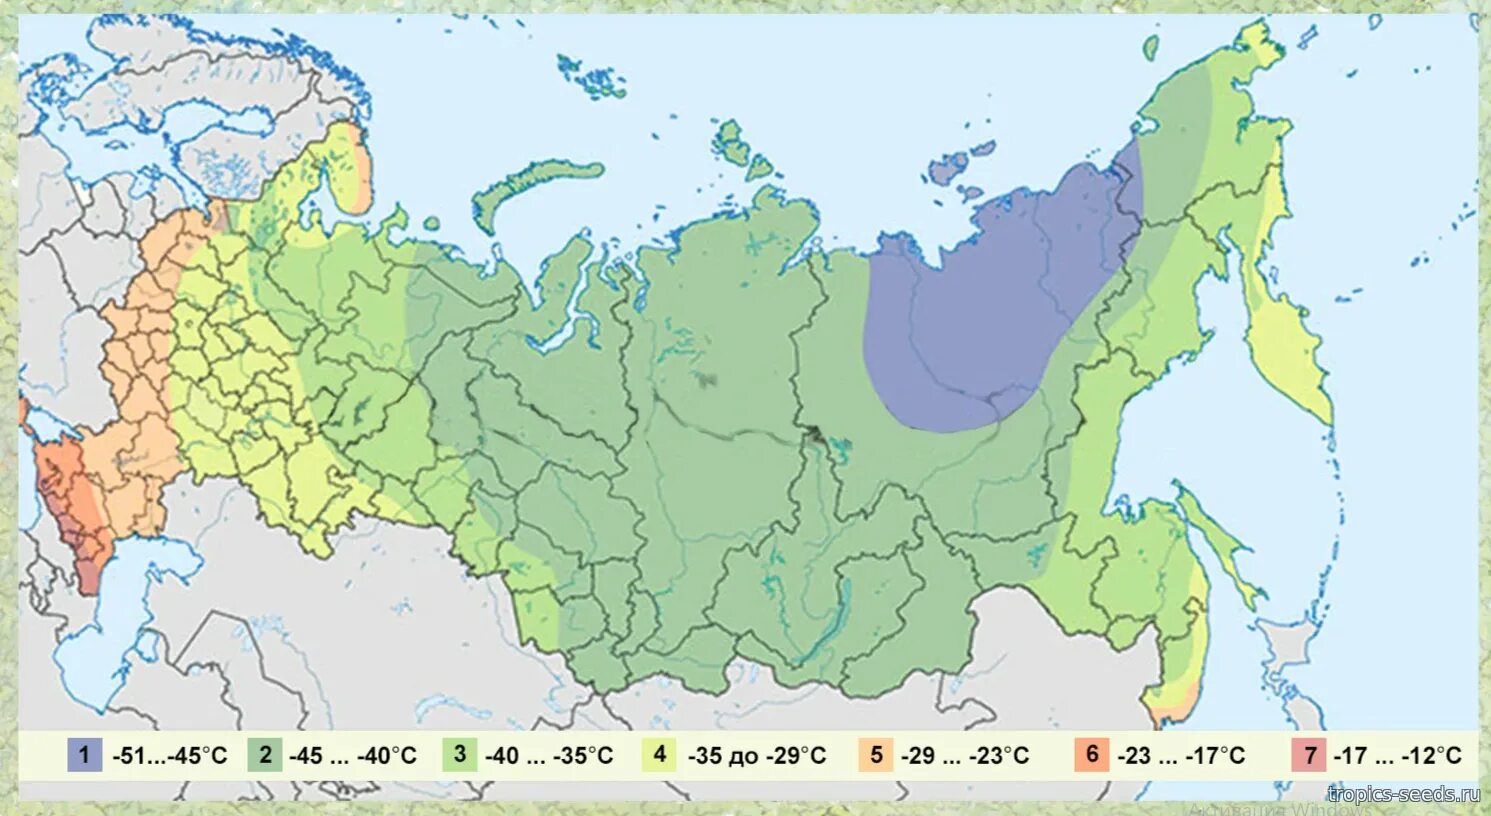 2 зона это где. Зоны зимостойкости растений России на карте. Карта климатических зон России USDA. Климатические зоны России карта зимостойкости. Карта зон морозостойкости USDA.